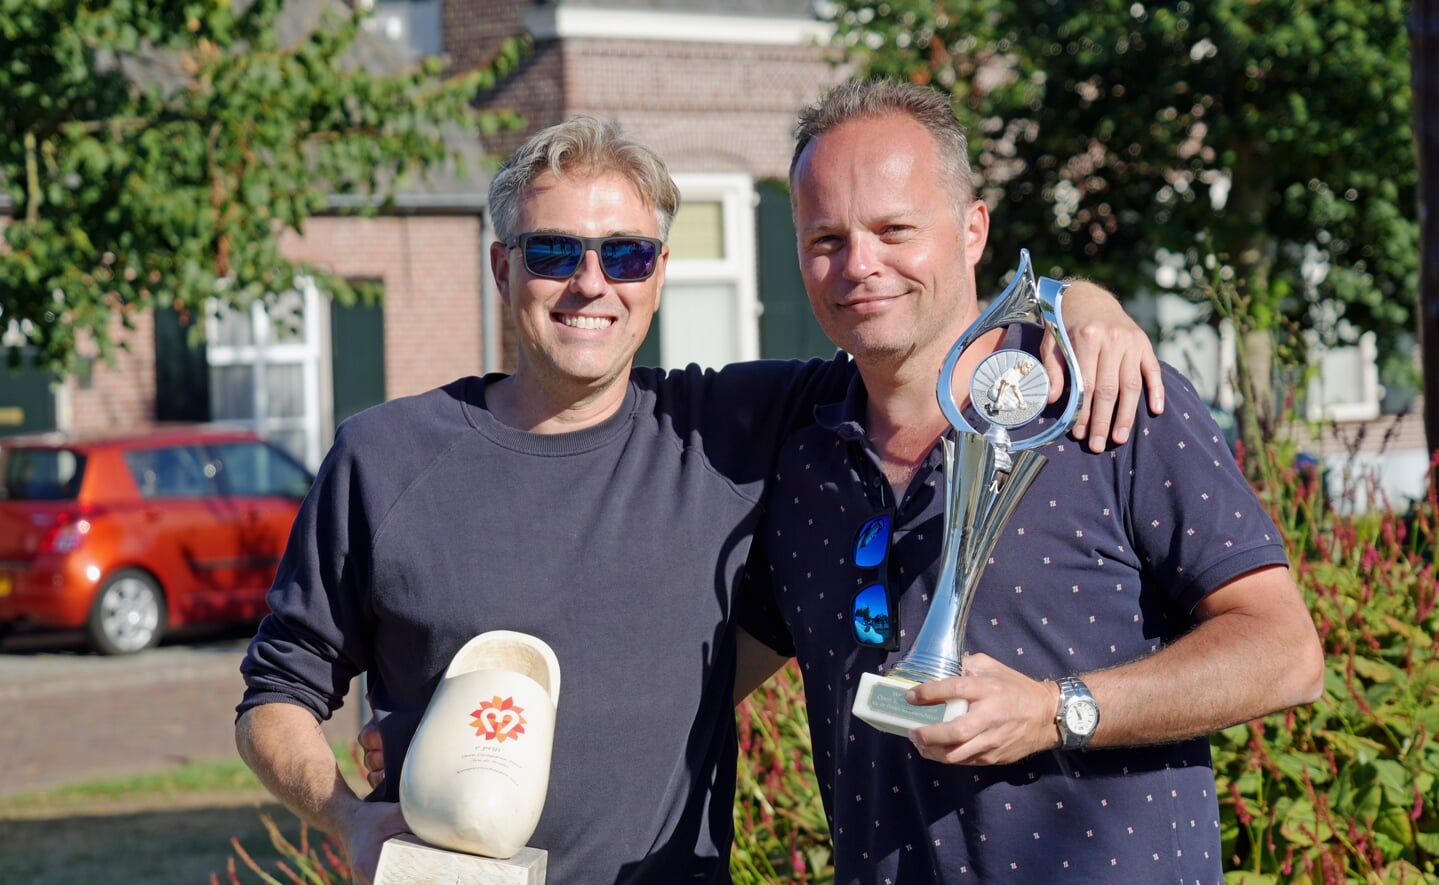 Ruim honderd jeu-de-boulesspelers deden zondag een gooi naar de winst om het Open Liempdsen Herd-kampioenschap. Andermaal gingen Ralph Meulendijk (rechts) en Arjo van Weelden uit Boxtel er met de zege vandoor.